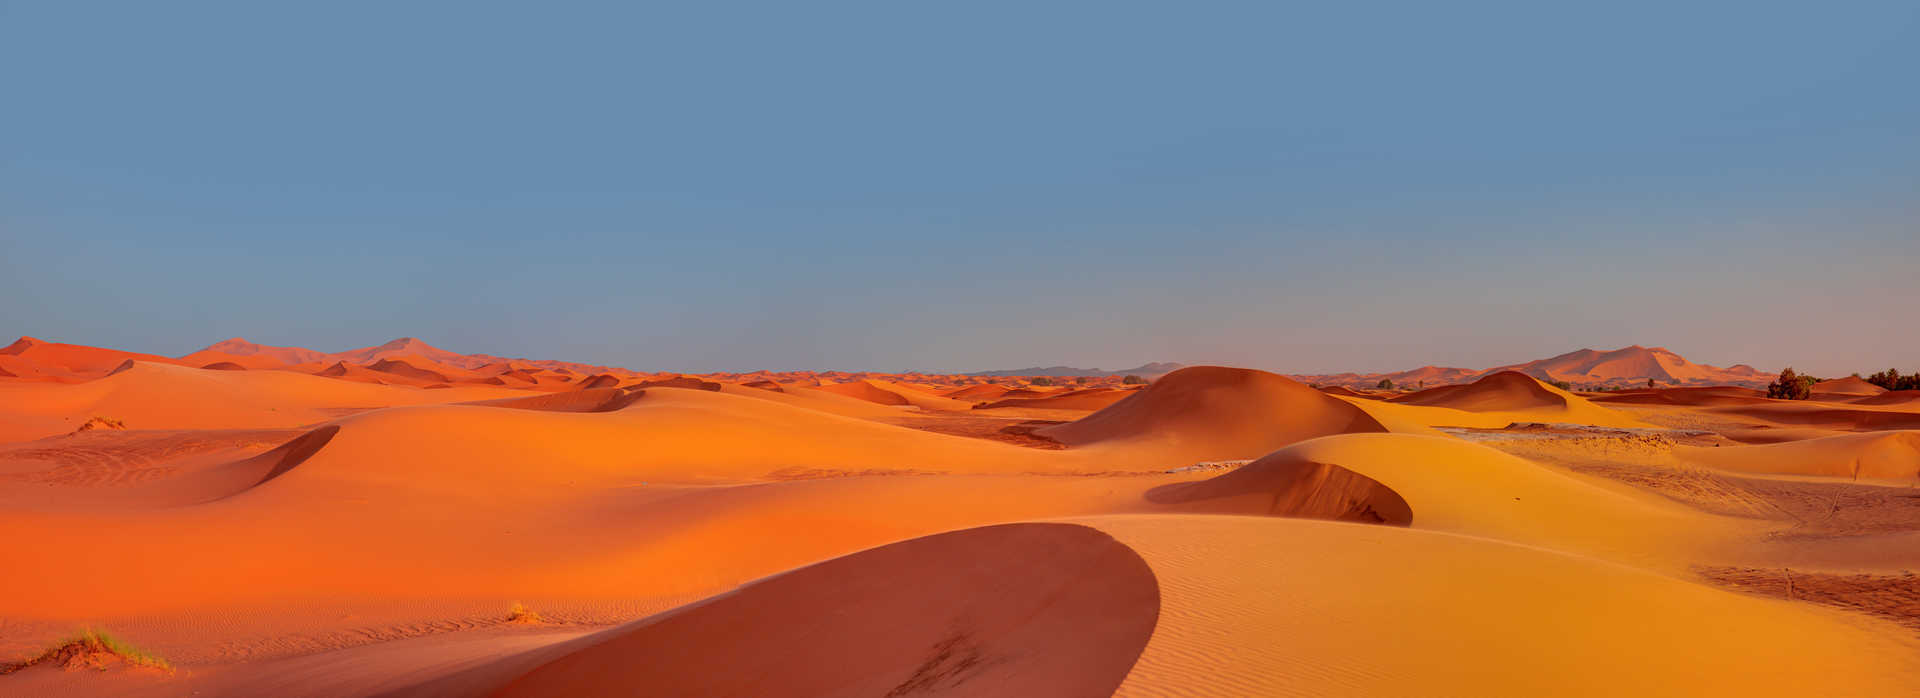 Dunes de sable au Maroc desert